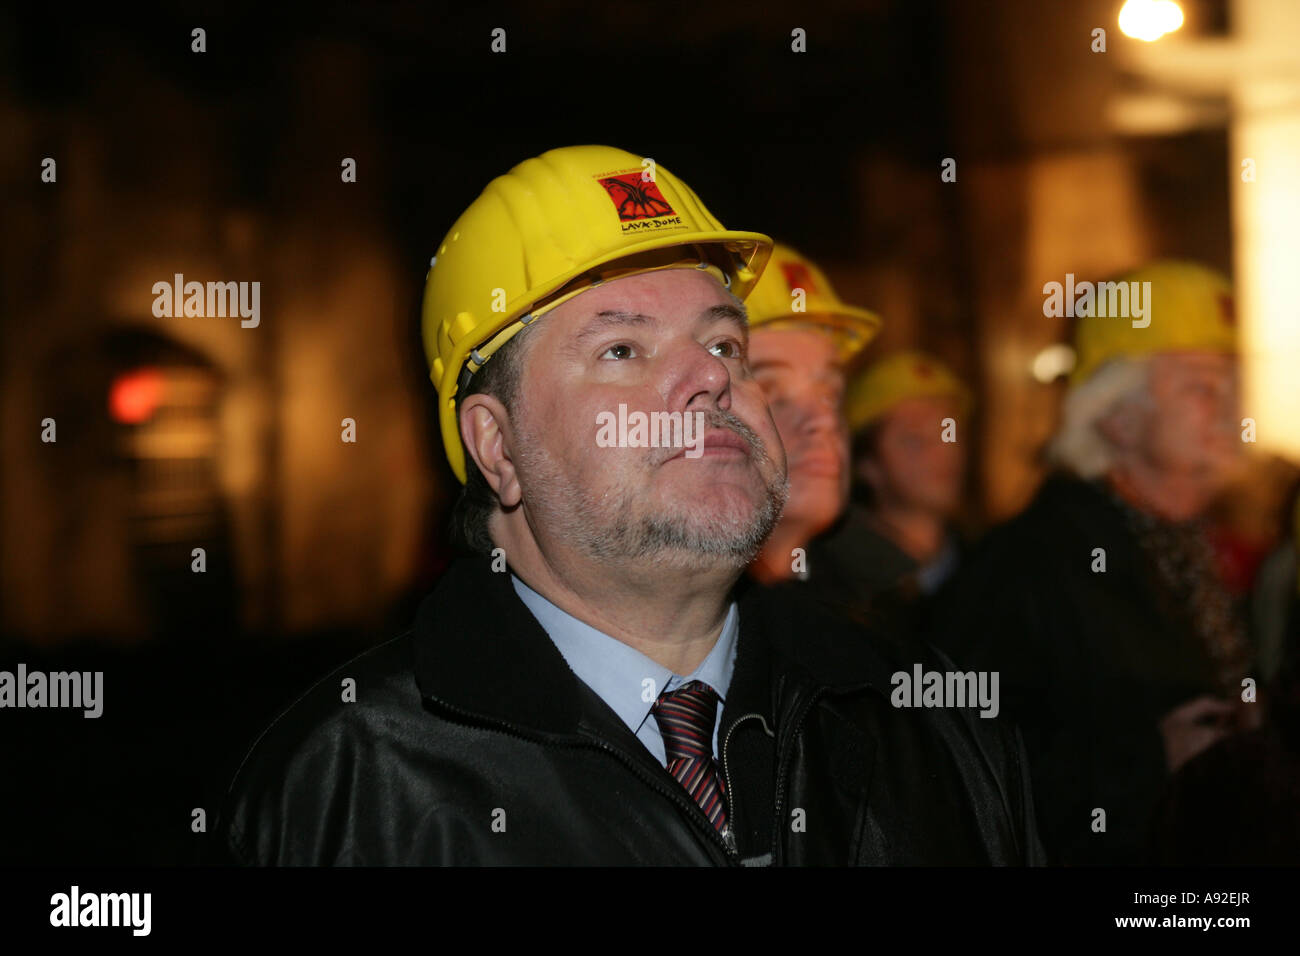 El presidente del partido social demócrata de Alemania, y el primer ministro de Renania-Palatinado Kurt Beck en una mina cerca de mostrar Foto de stock